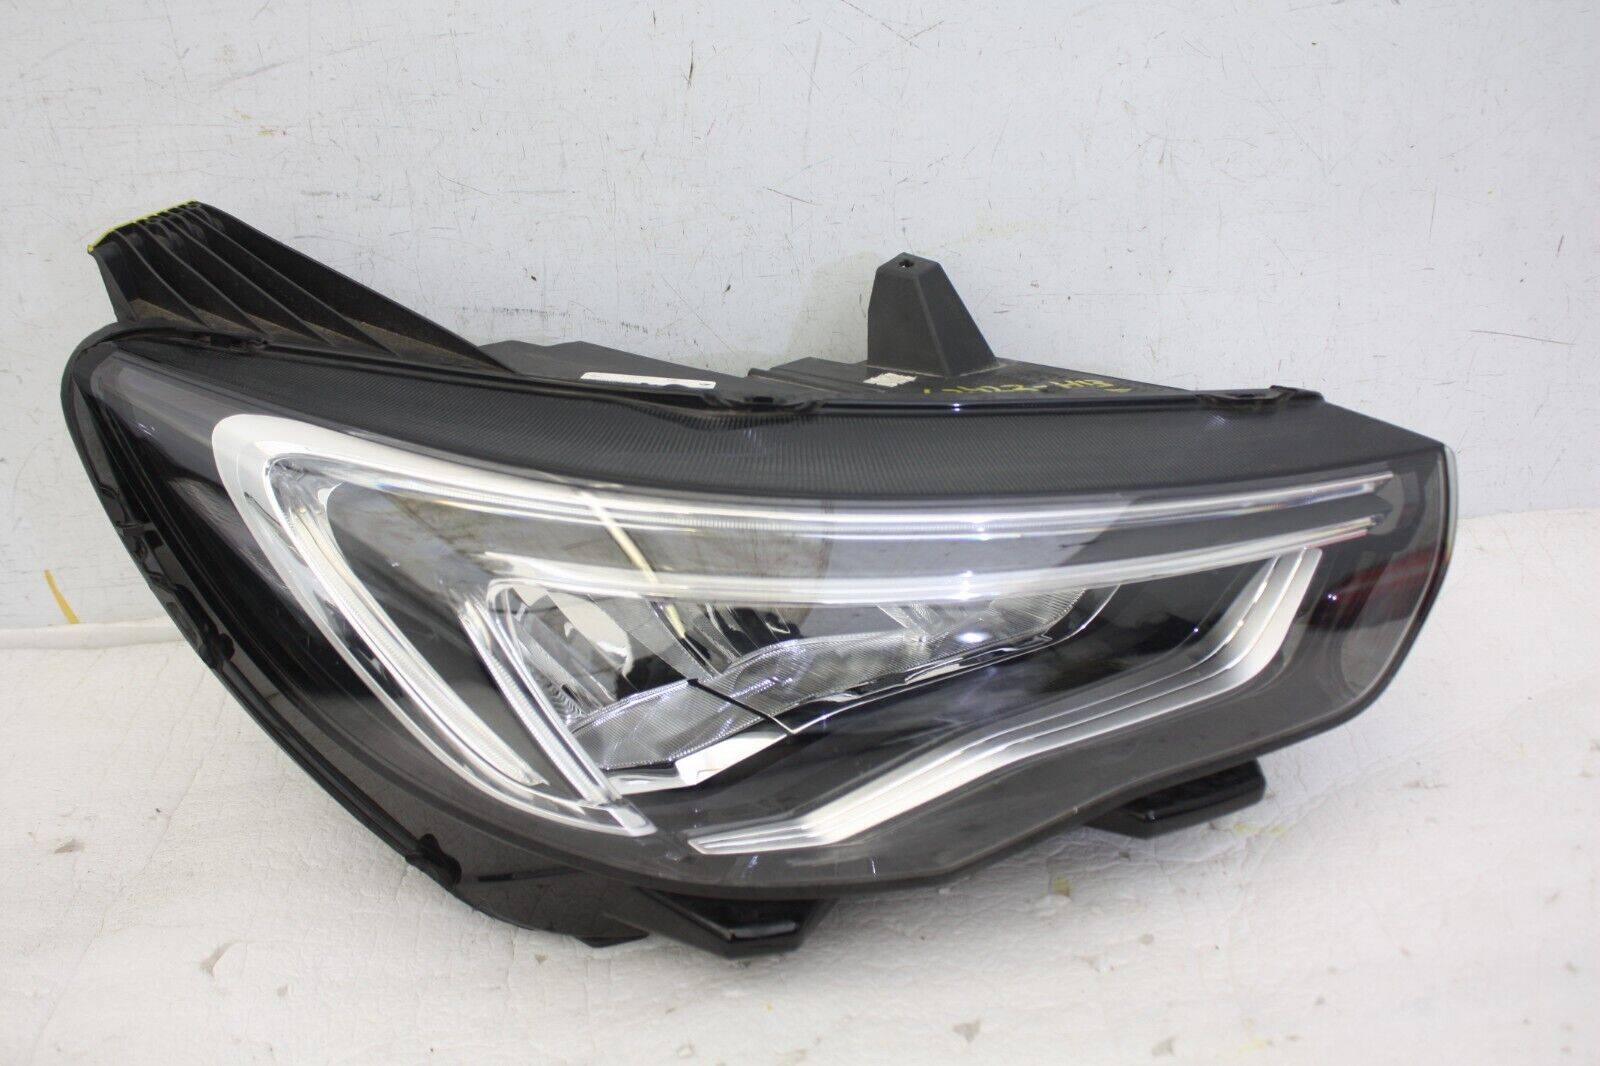 Vauxhall Grandland X Right Side LED Headlight YP00162780 Genuine DAMAGED 176421748493